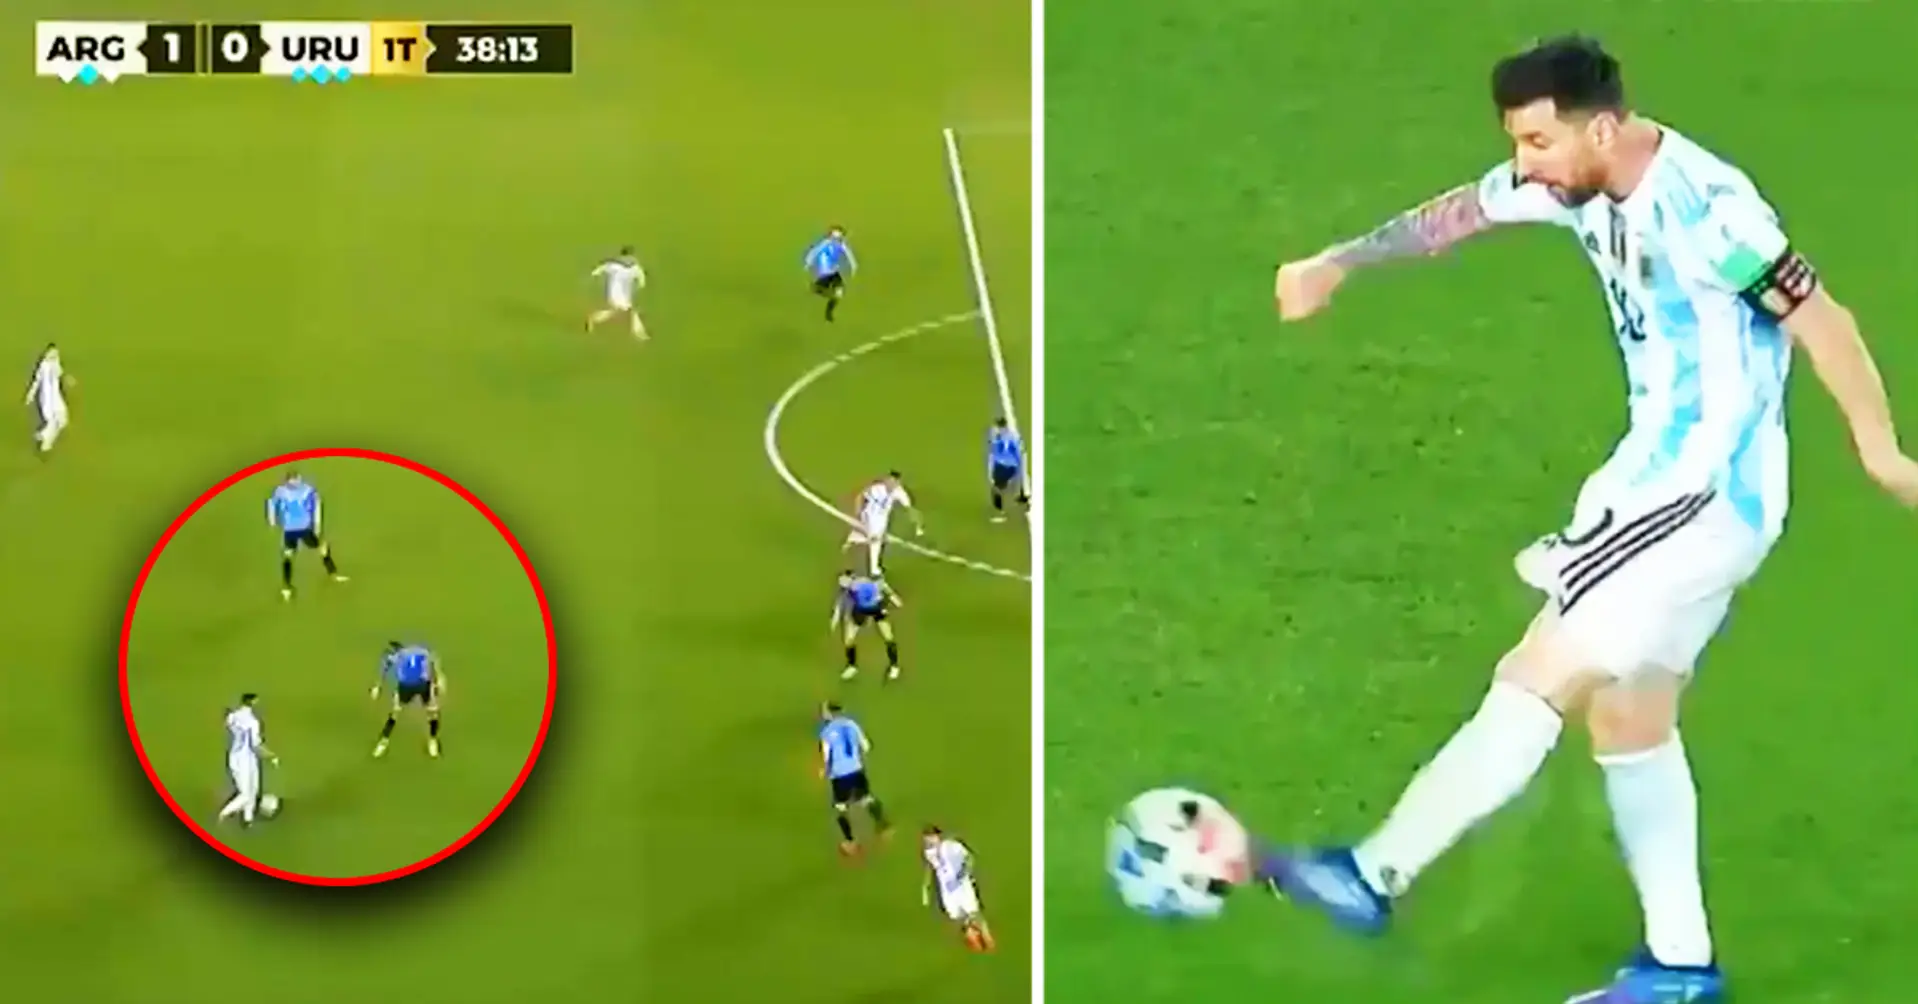 WOW: Leo Messi schockiert die Fans im Spiel gegen Uruguay mit einem unglaublichen Pass, der zu einem Tor wird